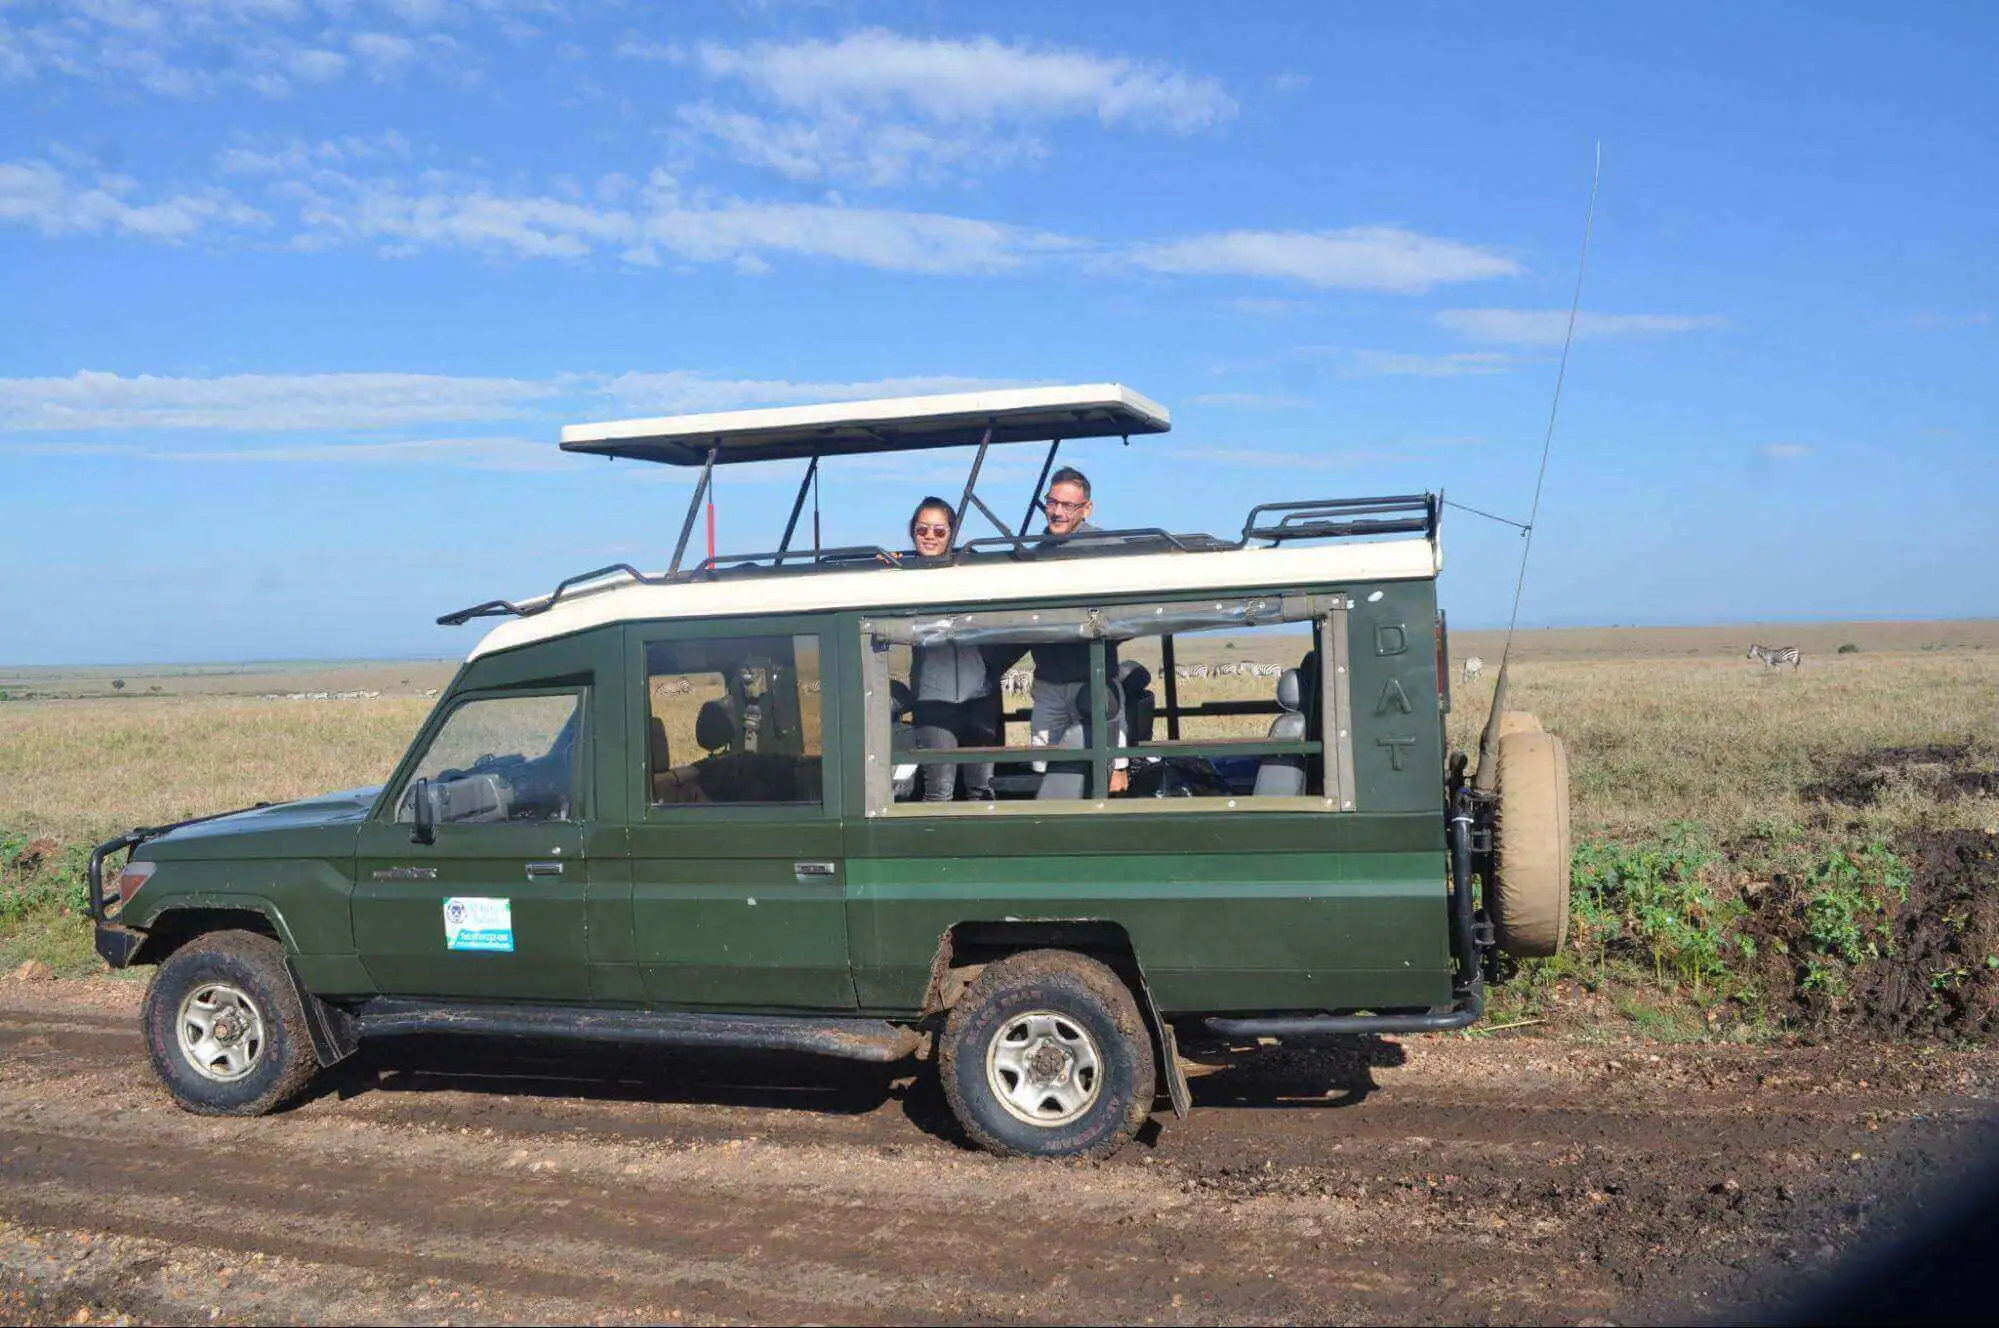 Private Kenya Safari tours in Masai Mara with AjKenyasafaris.com ltd.